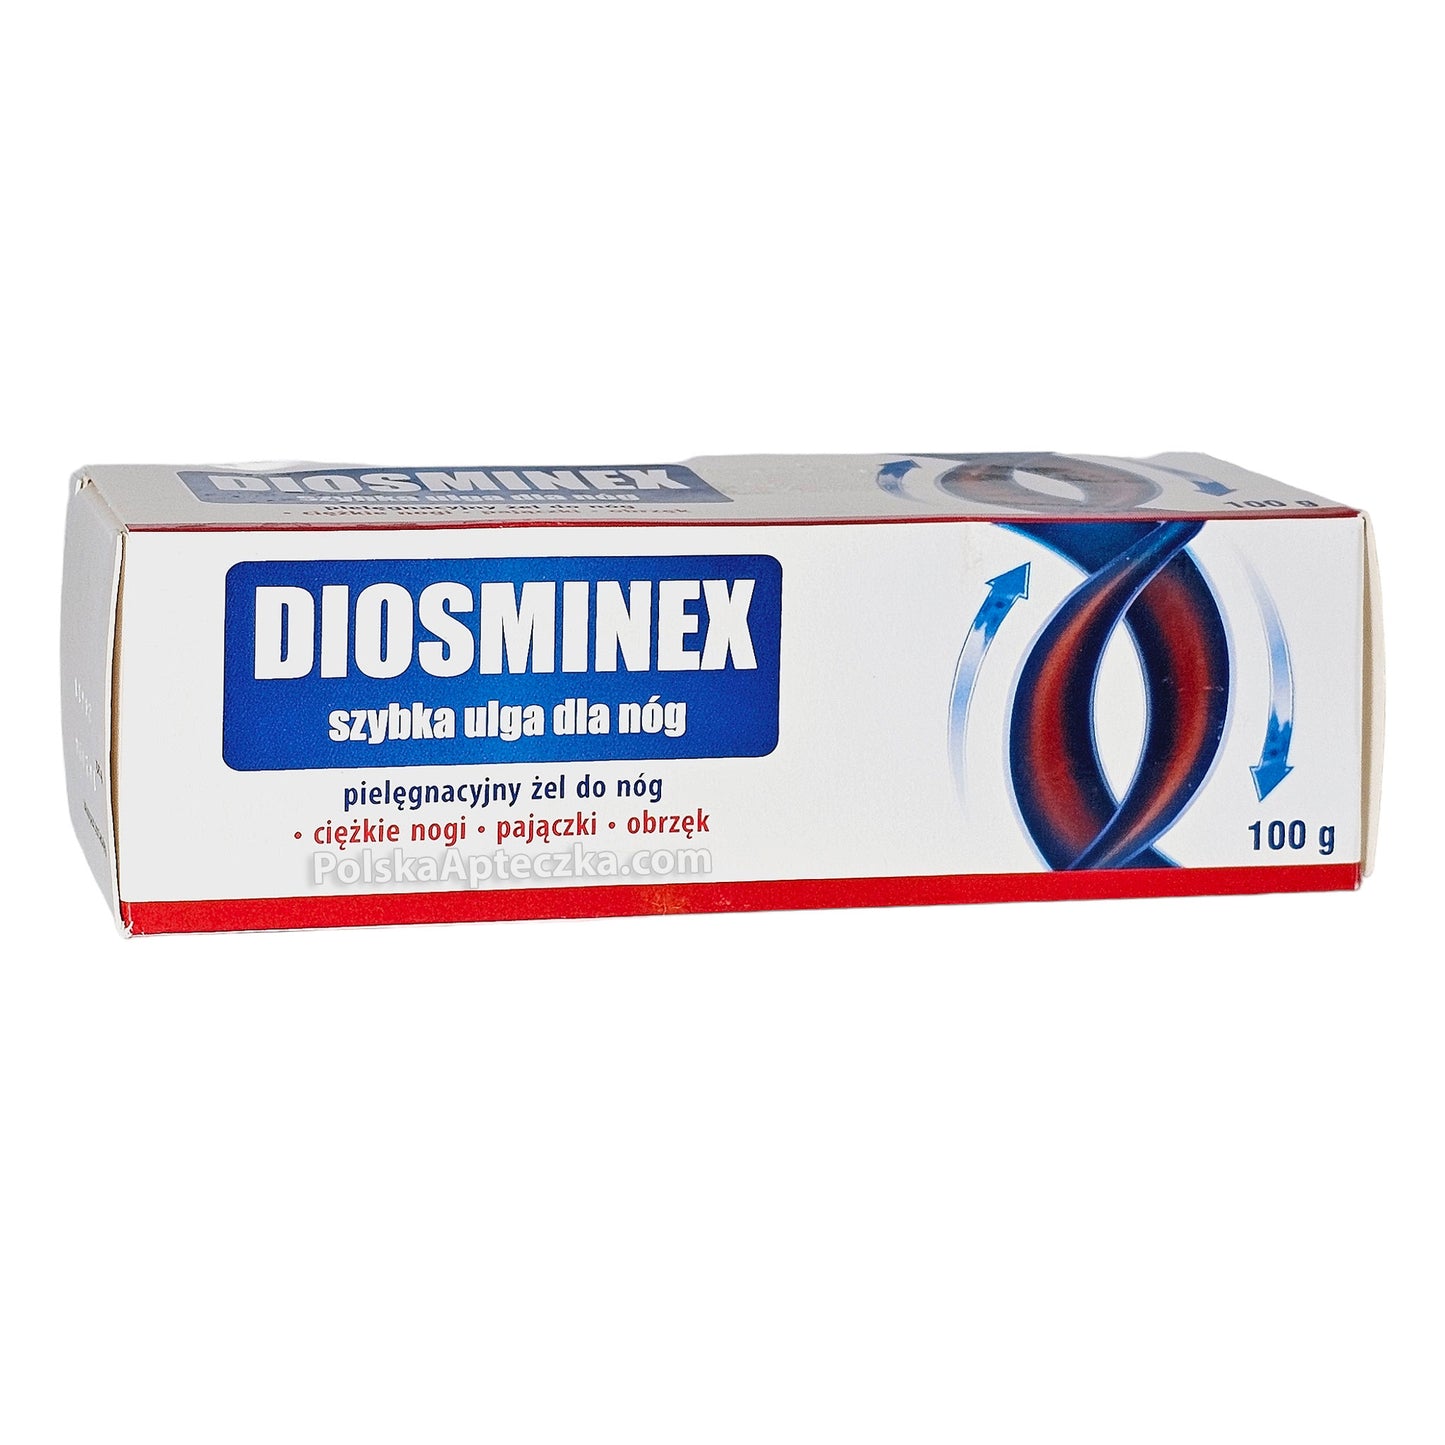 diosminex gel